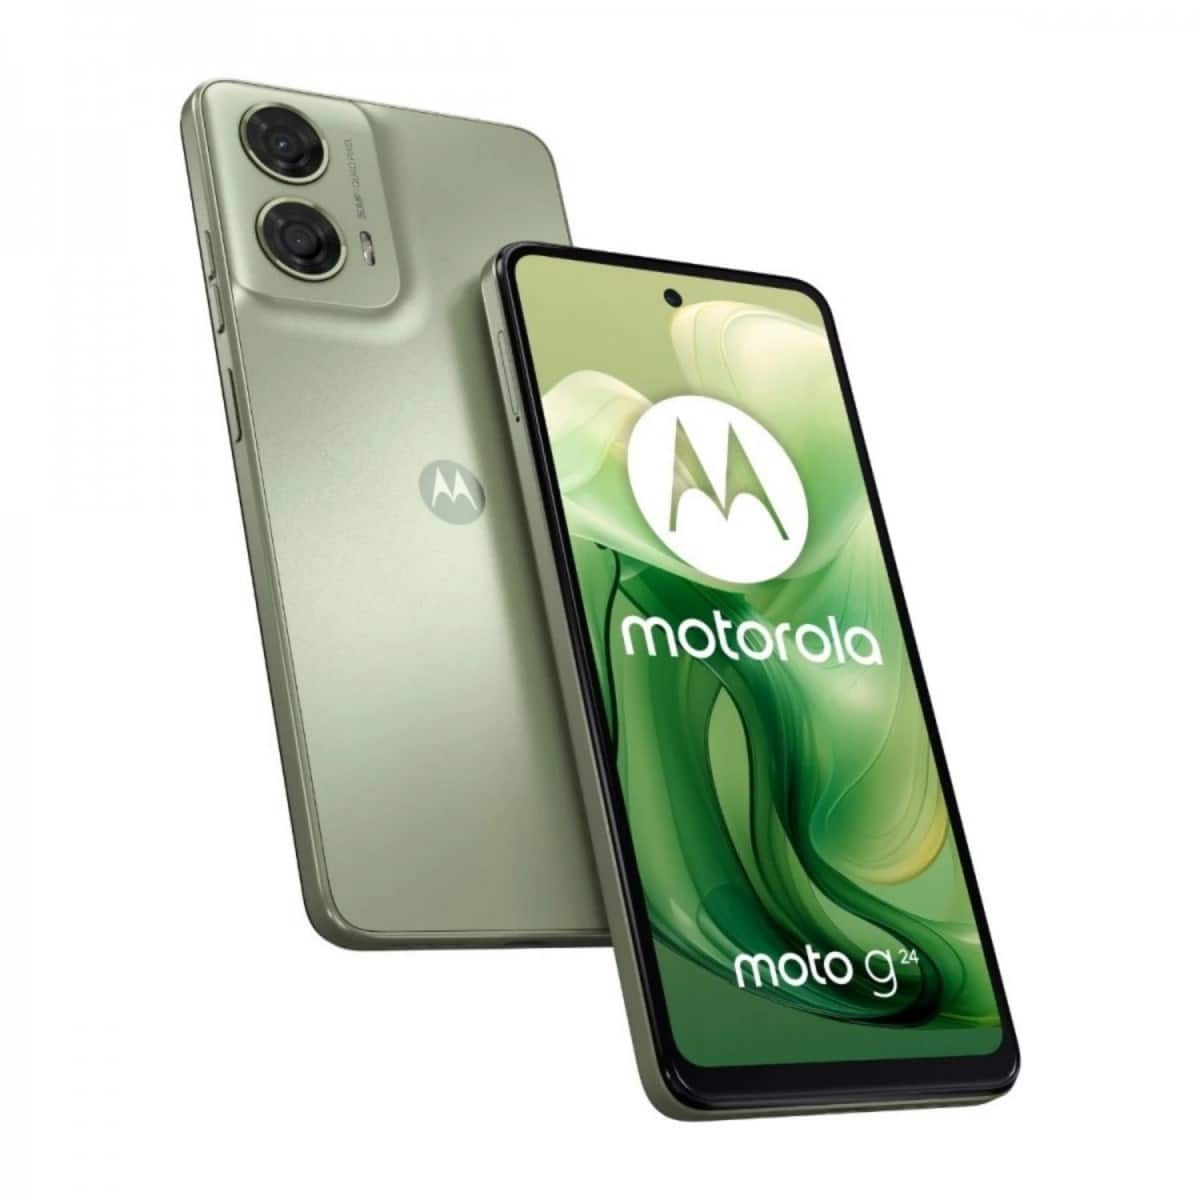 Smartphone Motorola G24 con batería potente tiene 17% de descuento en Amazon
